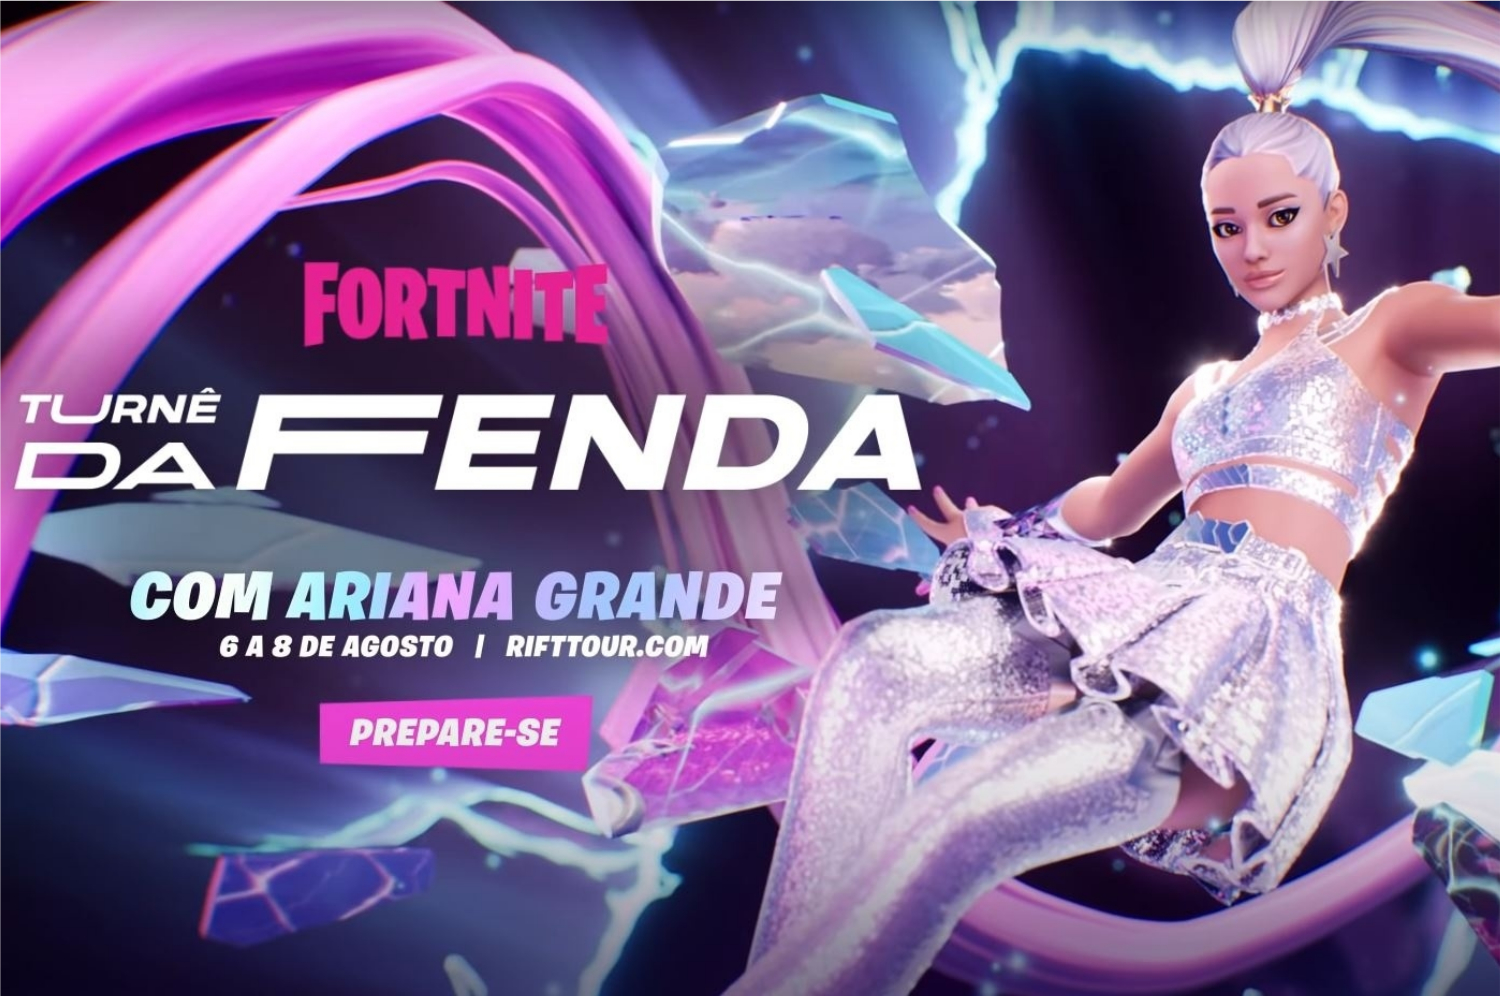 Descubra como vai funcionar o show da Ariana Grande na Turnê da Fenda do Fortnite (Imagem: Divulgação/Epic Games)